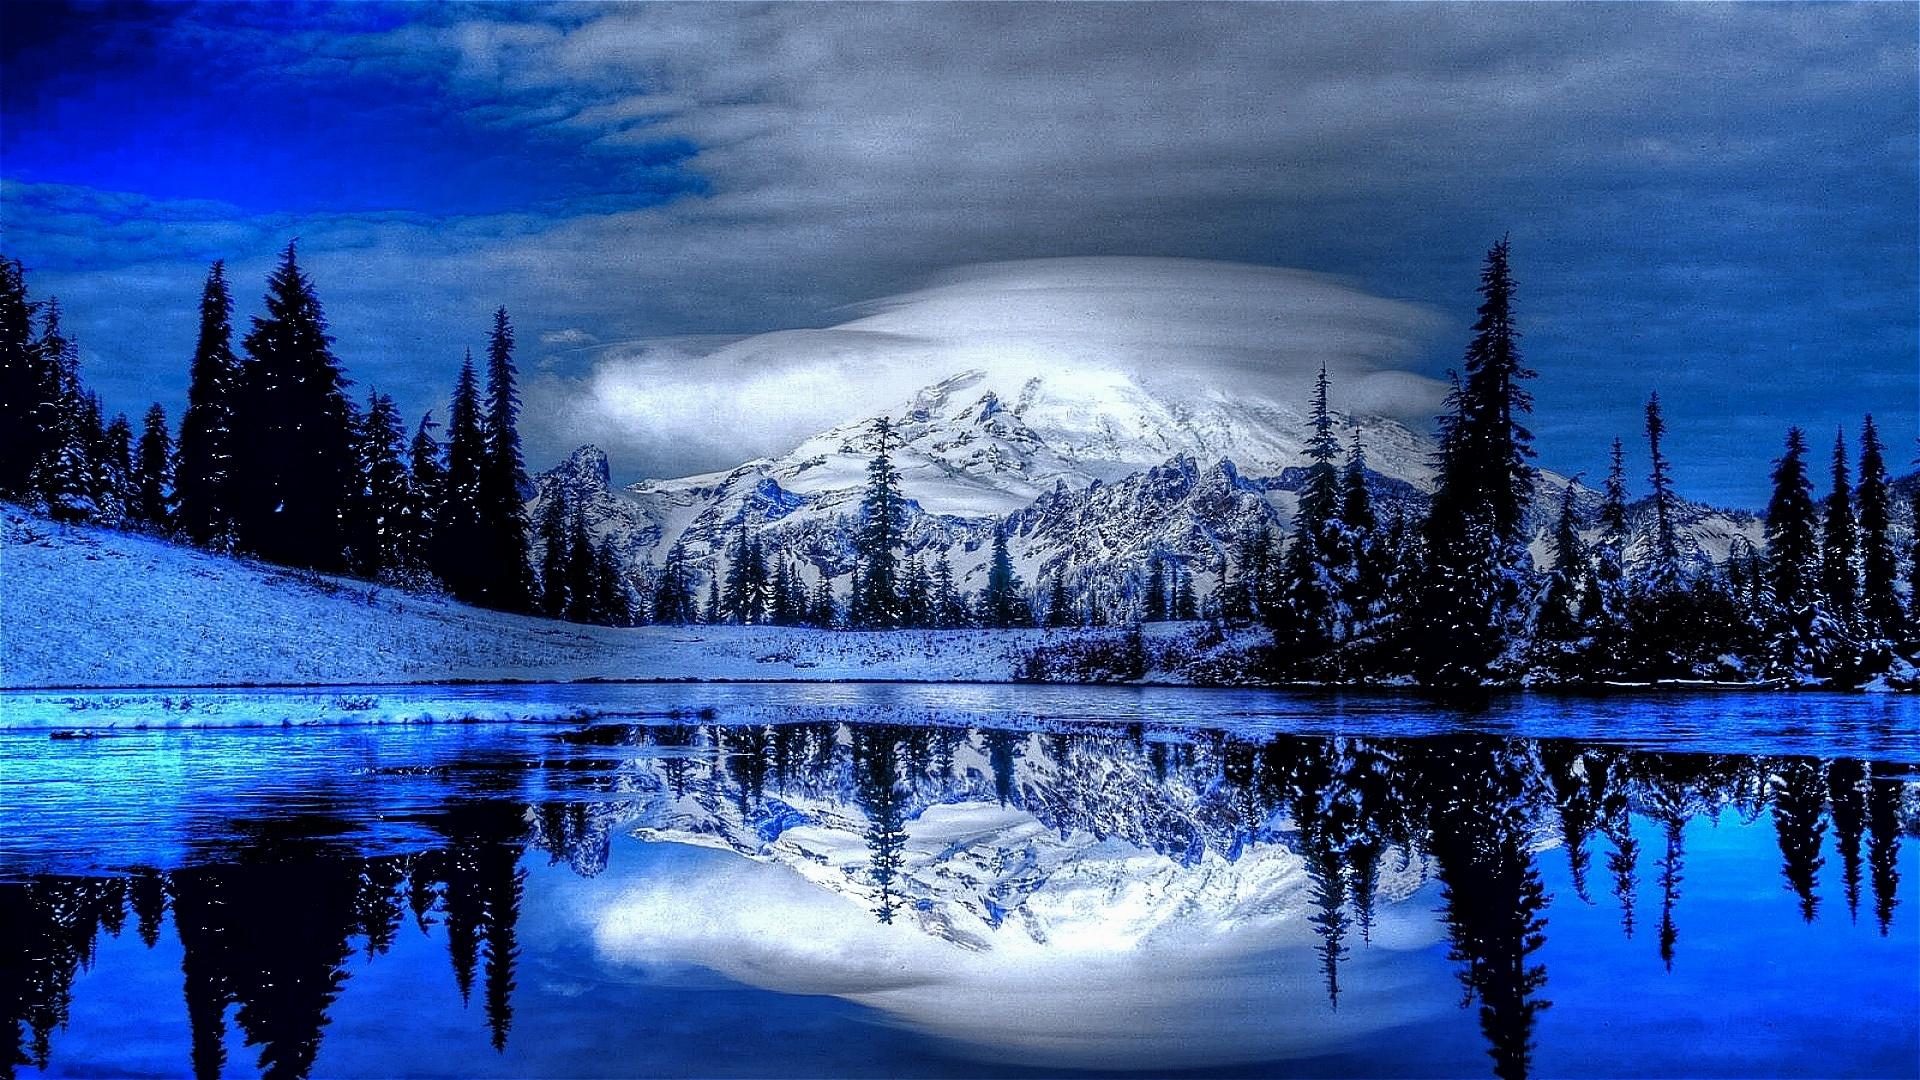 winter wonderland wallpaper,sky,natural landscape,nature,reflection,blue